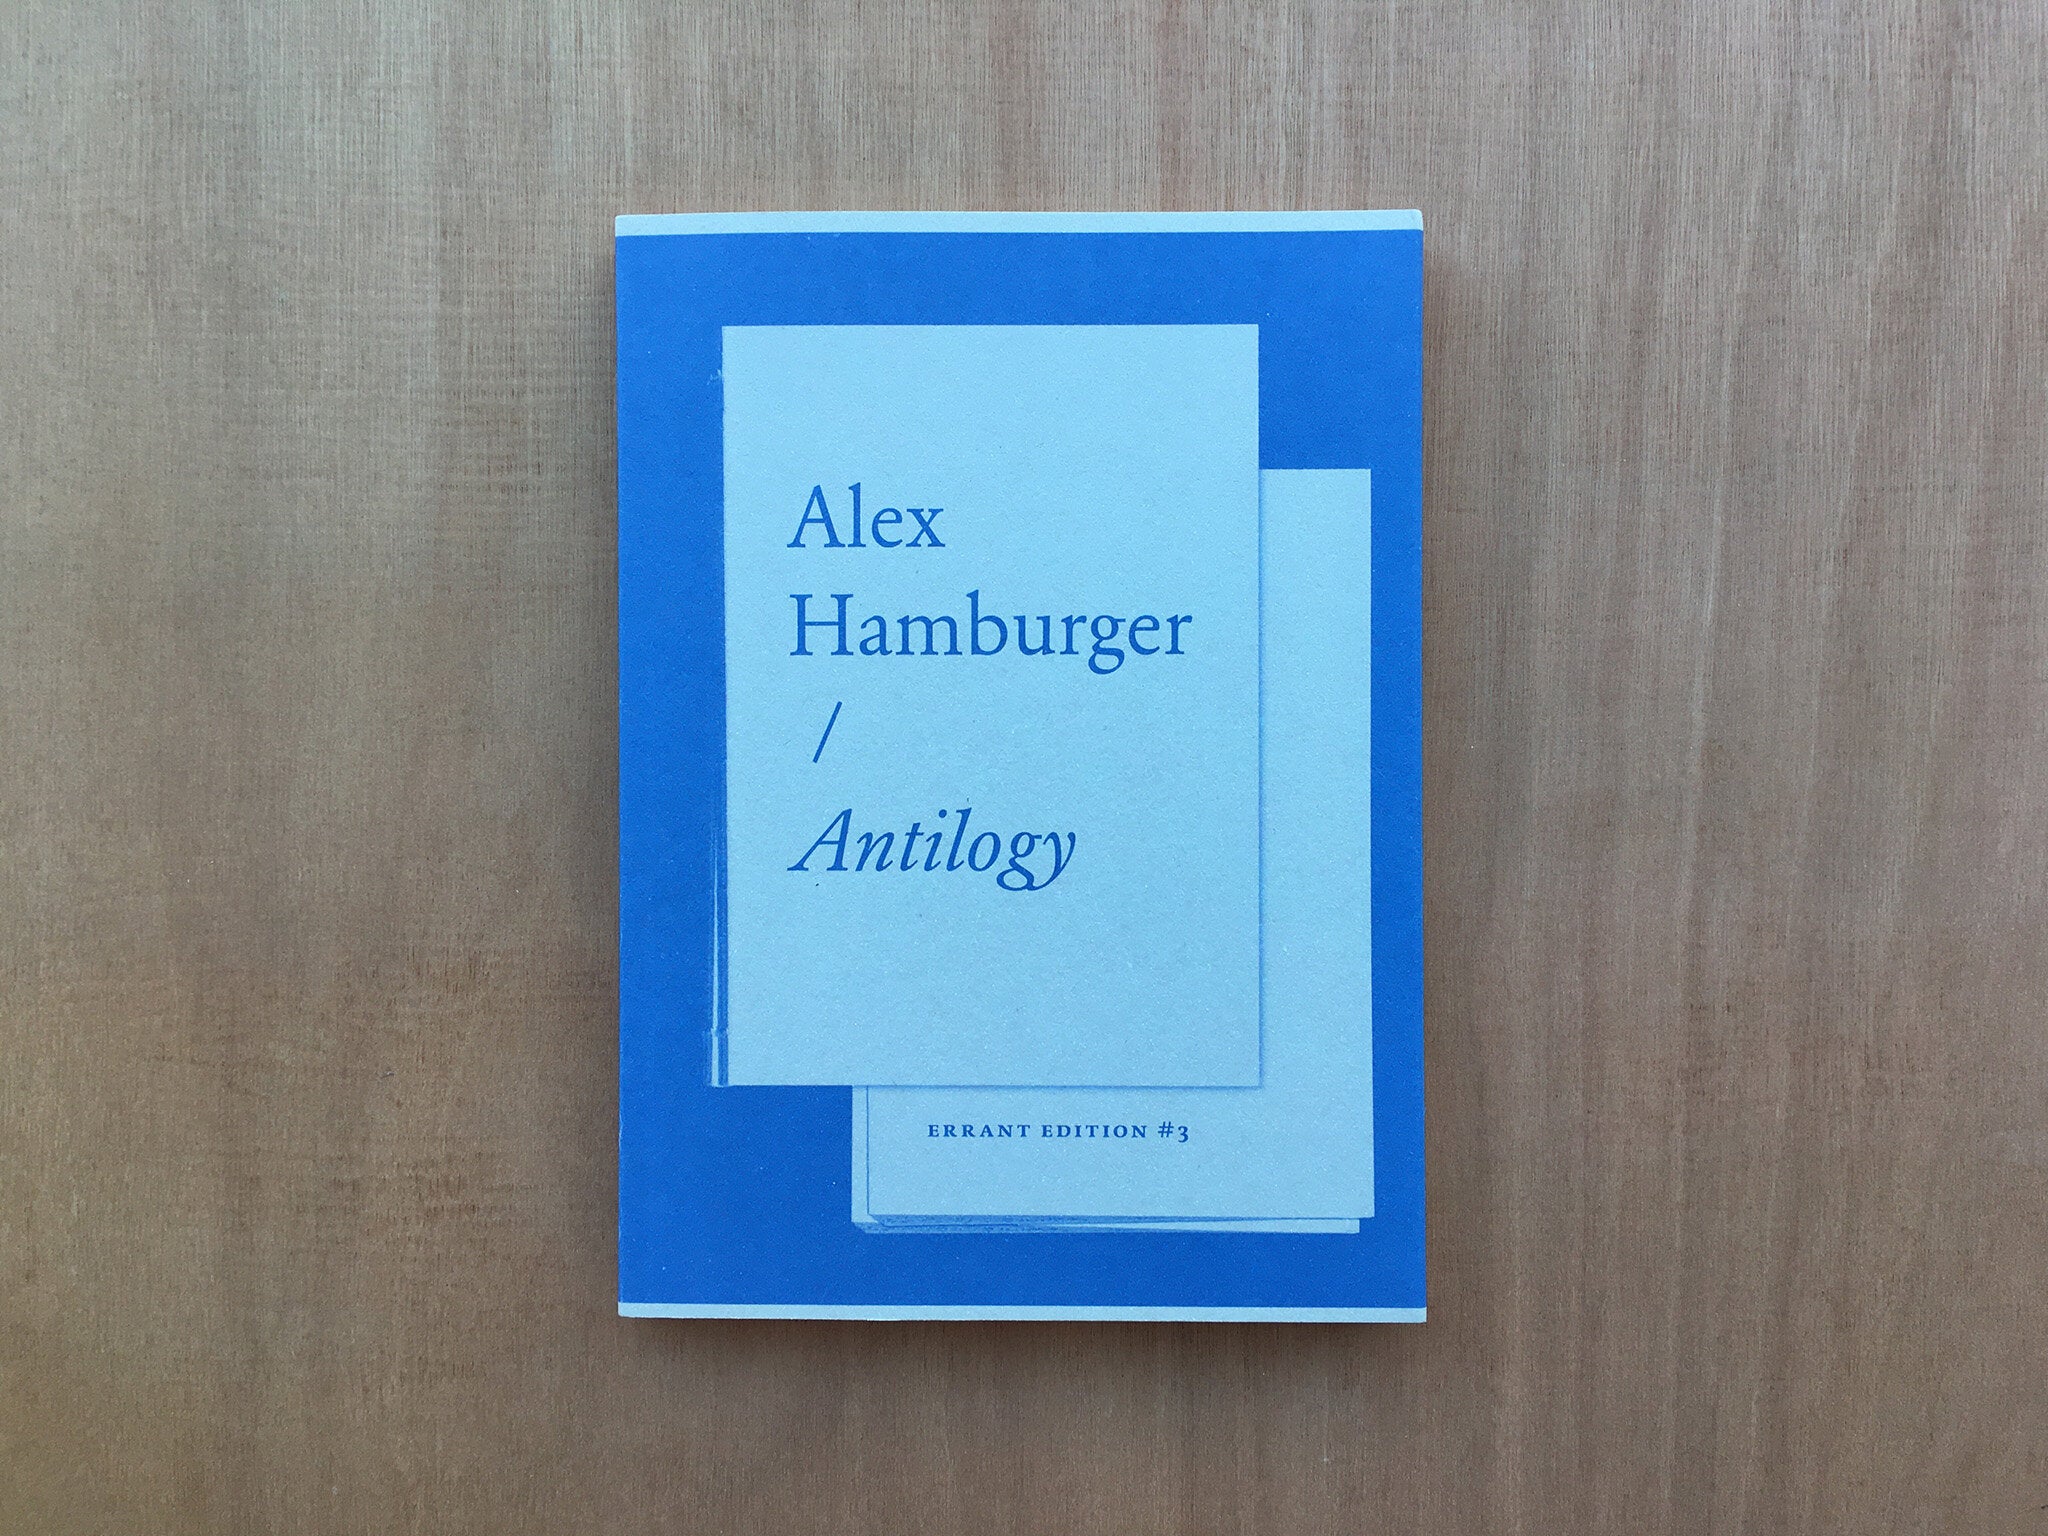 ANTILOGY by Alex Hamburger